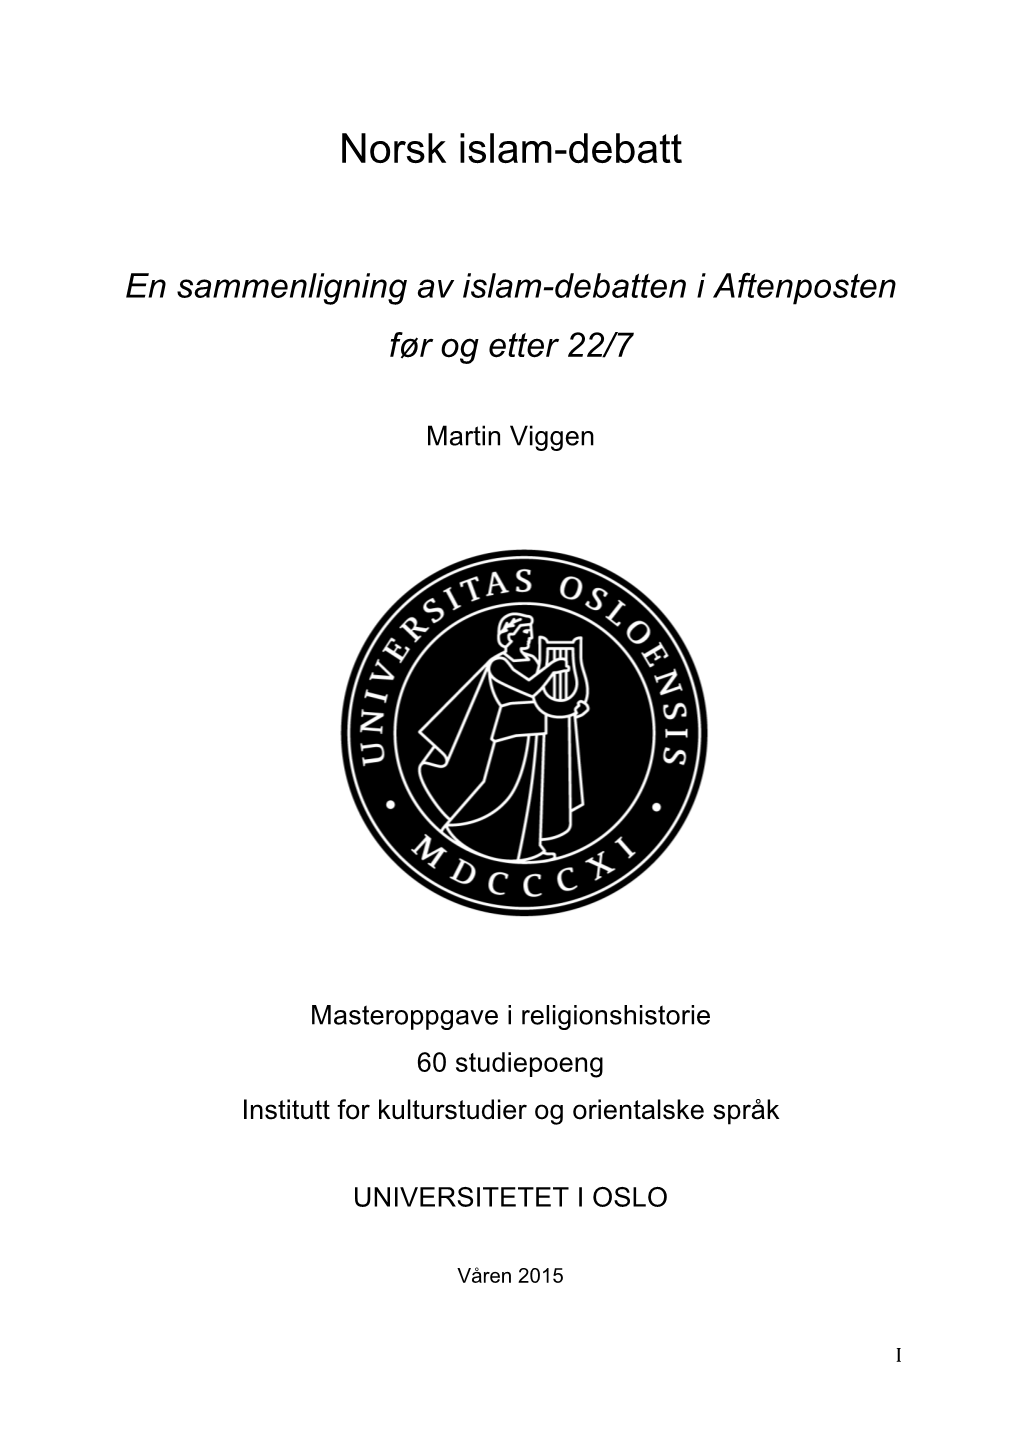 Norsk Islam-Debatt